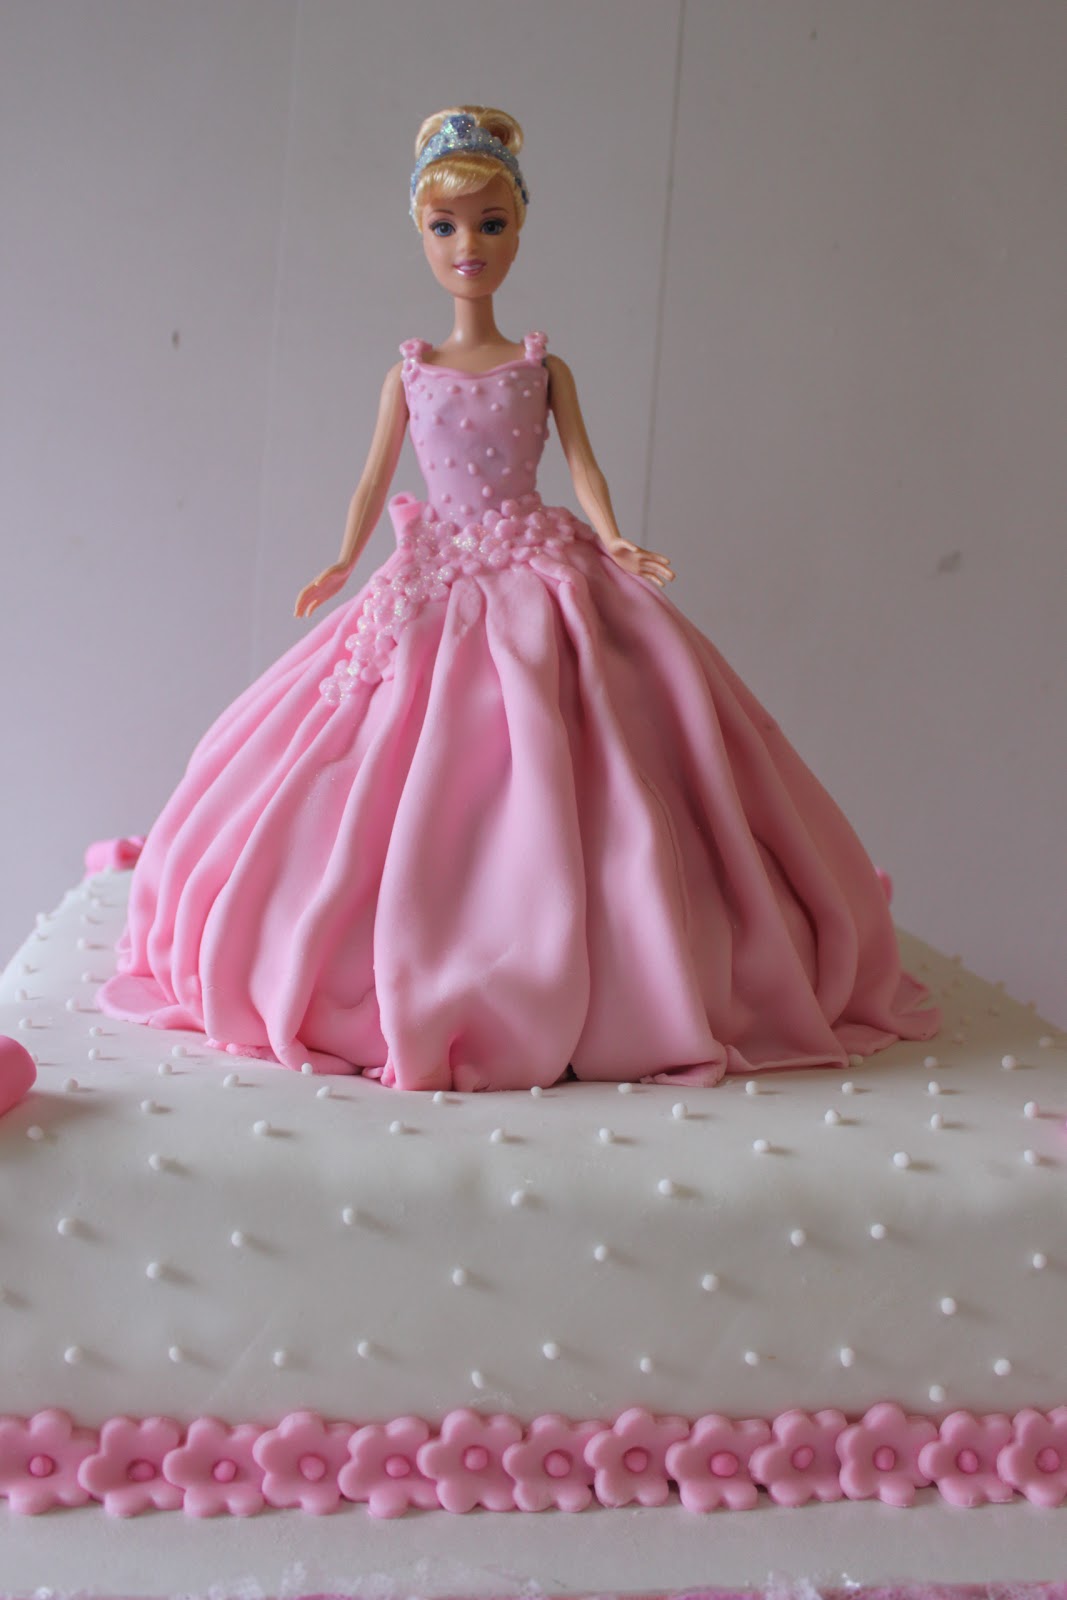 Bolos Decorados: Bolo Decorado Barbie Princesa e Cupcakes